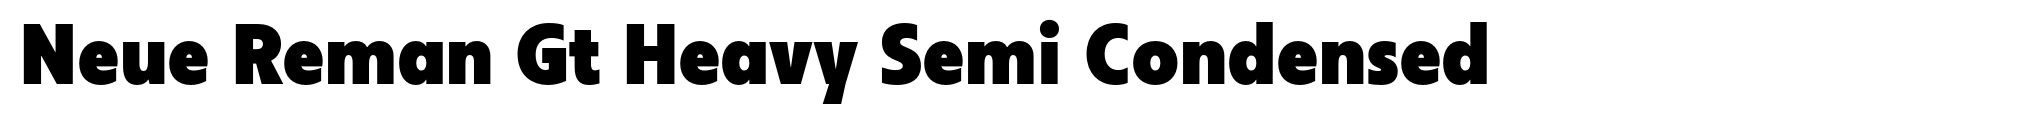 Neue Reman Gt Heavy Semi Condensed image